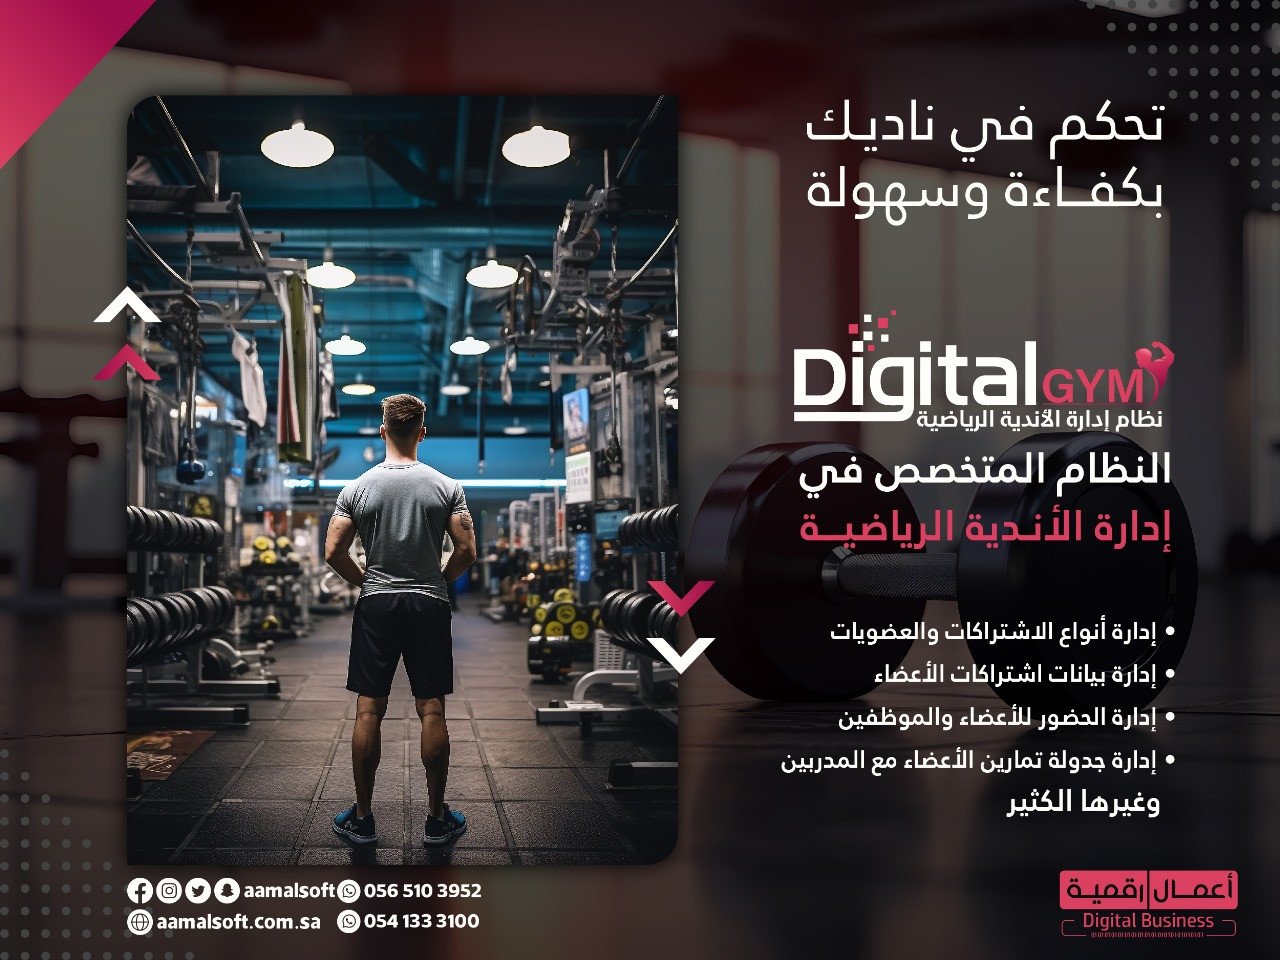 DigitalGYM: الثورة الرقمية في إدارة الأندية الرياضية!